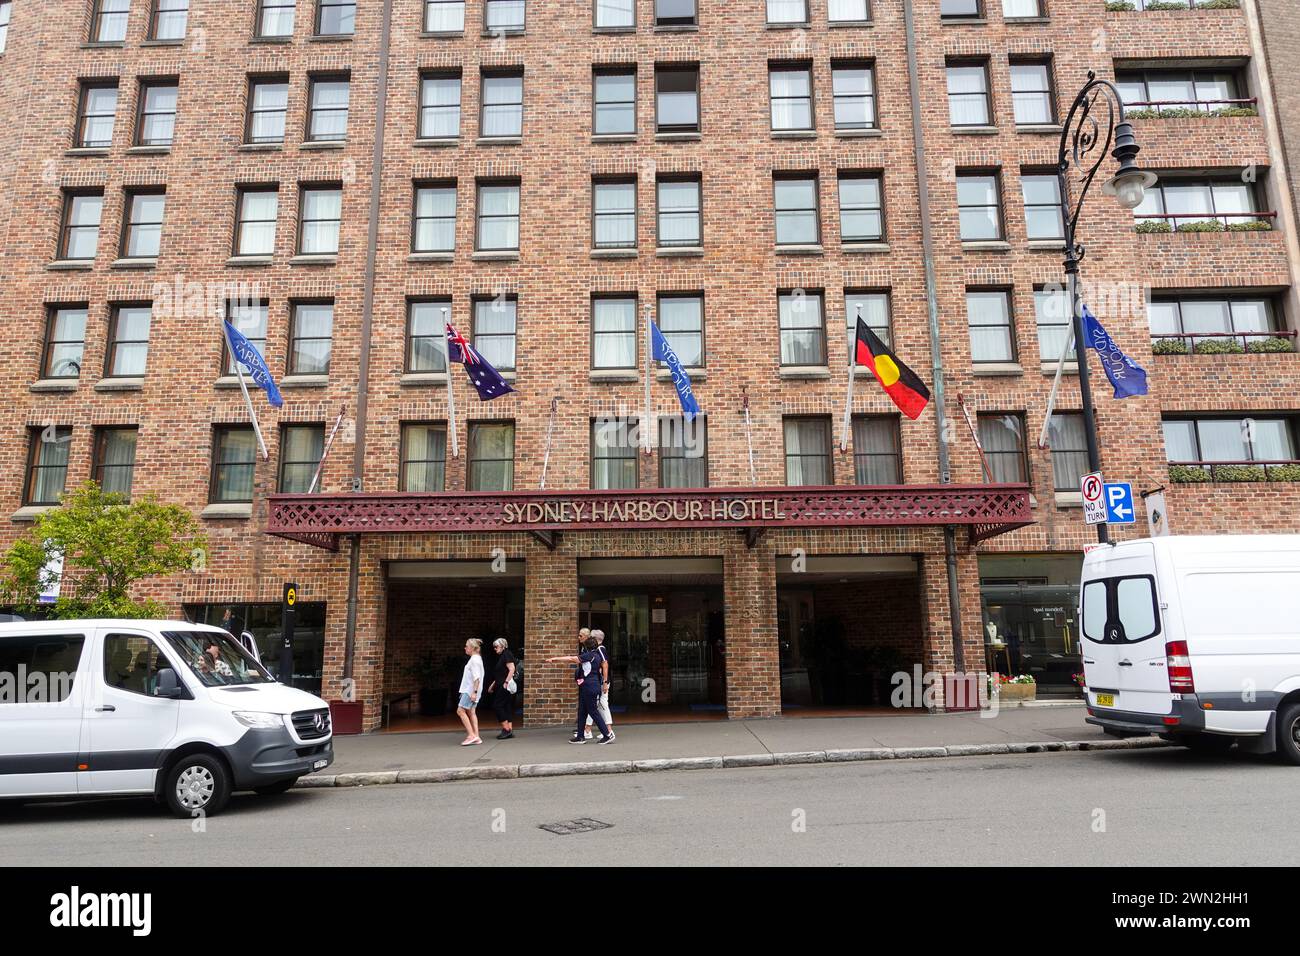 Le Sydney Harbour Hotel est situé au 55 George Street dans le quartier historique des Rocks. C’est un mélange unique d’équipements modernes et de charme historique. Le ho Banque D'Images